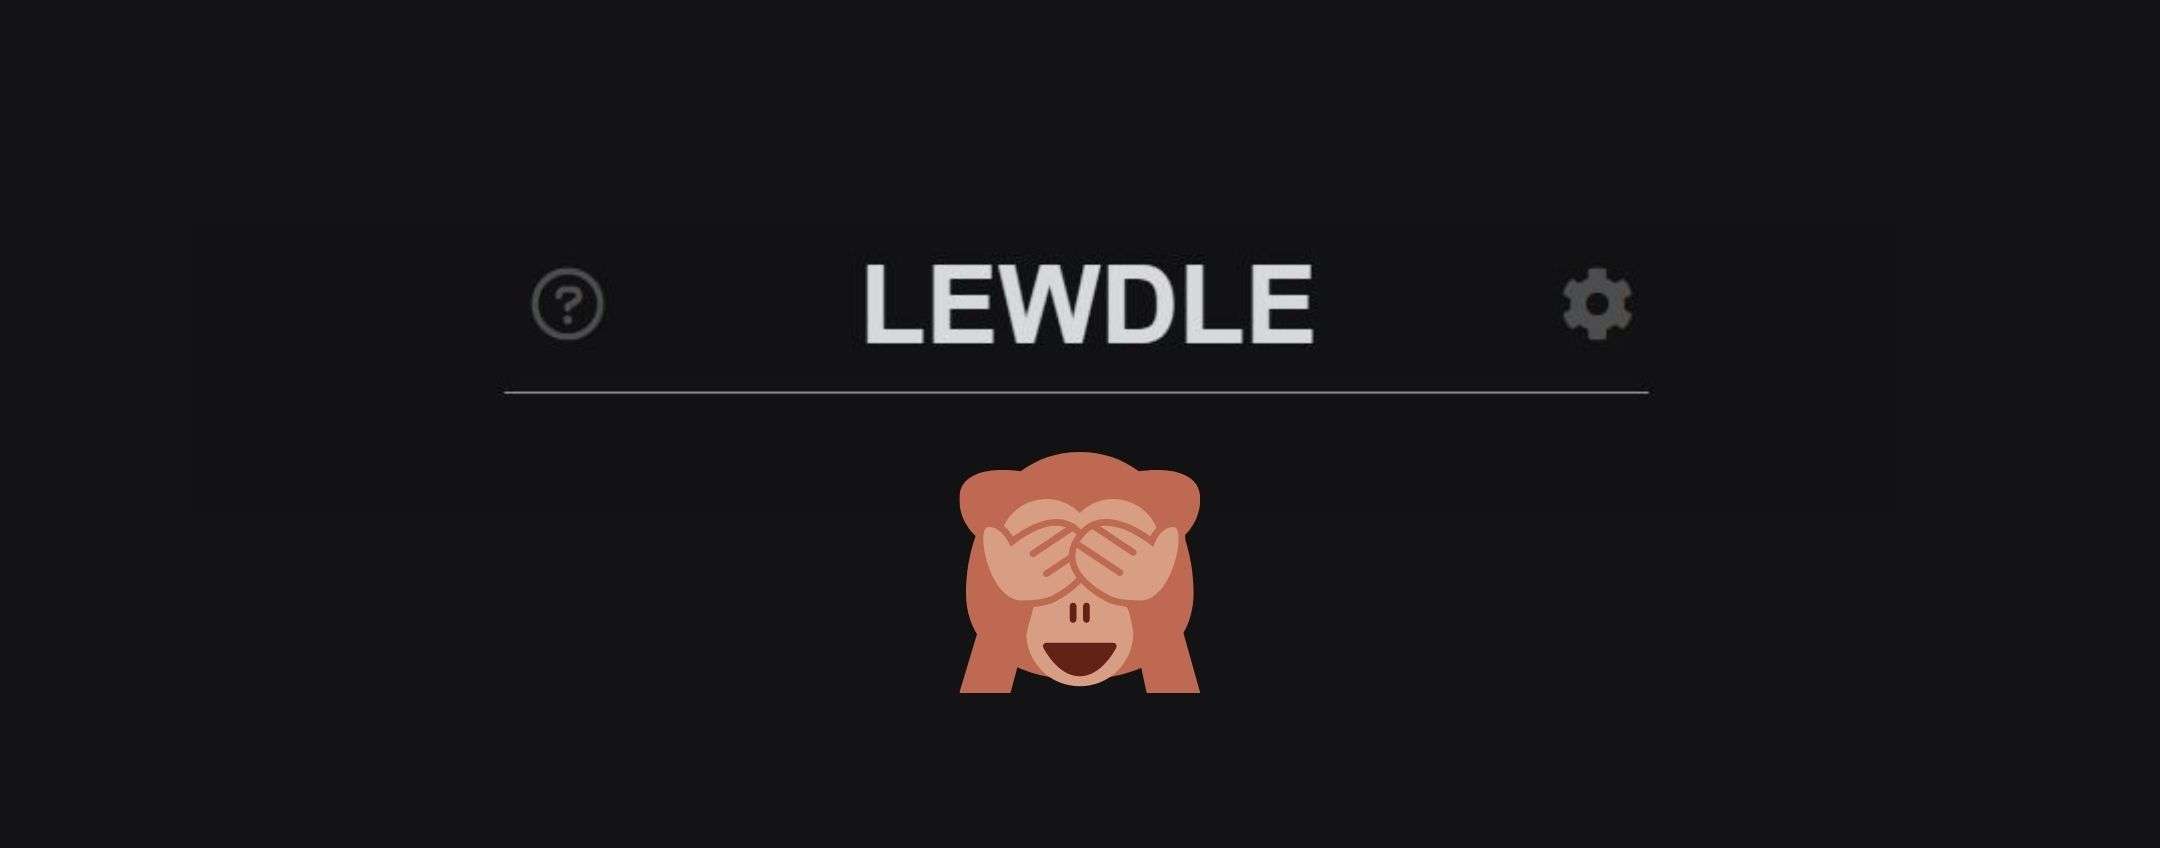 Lewdle Wordle parolacce